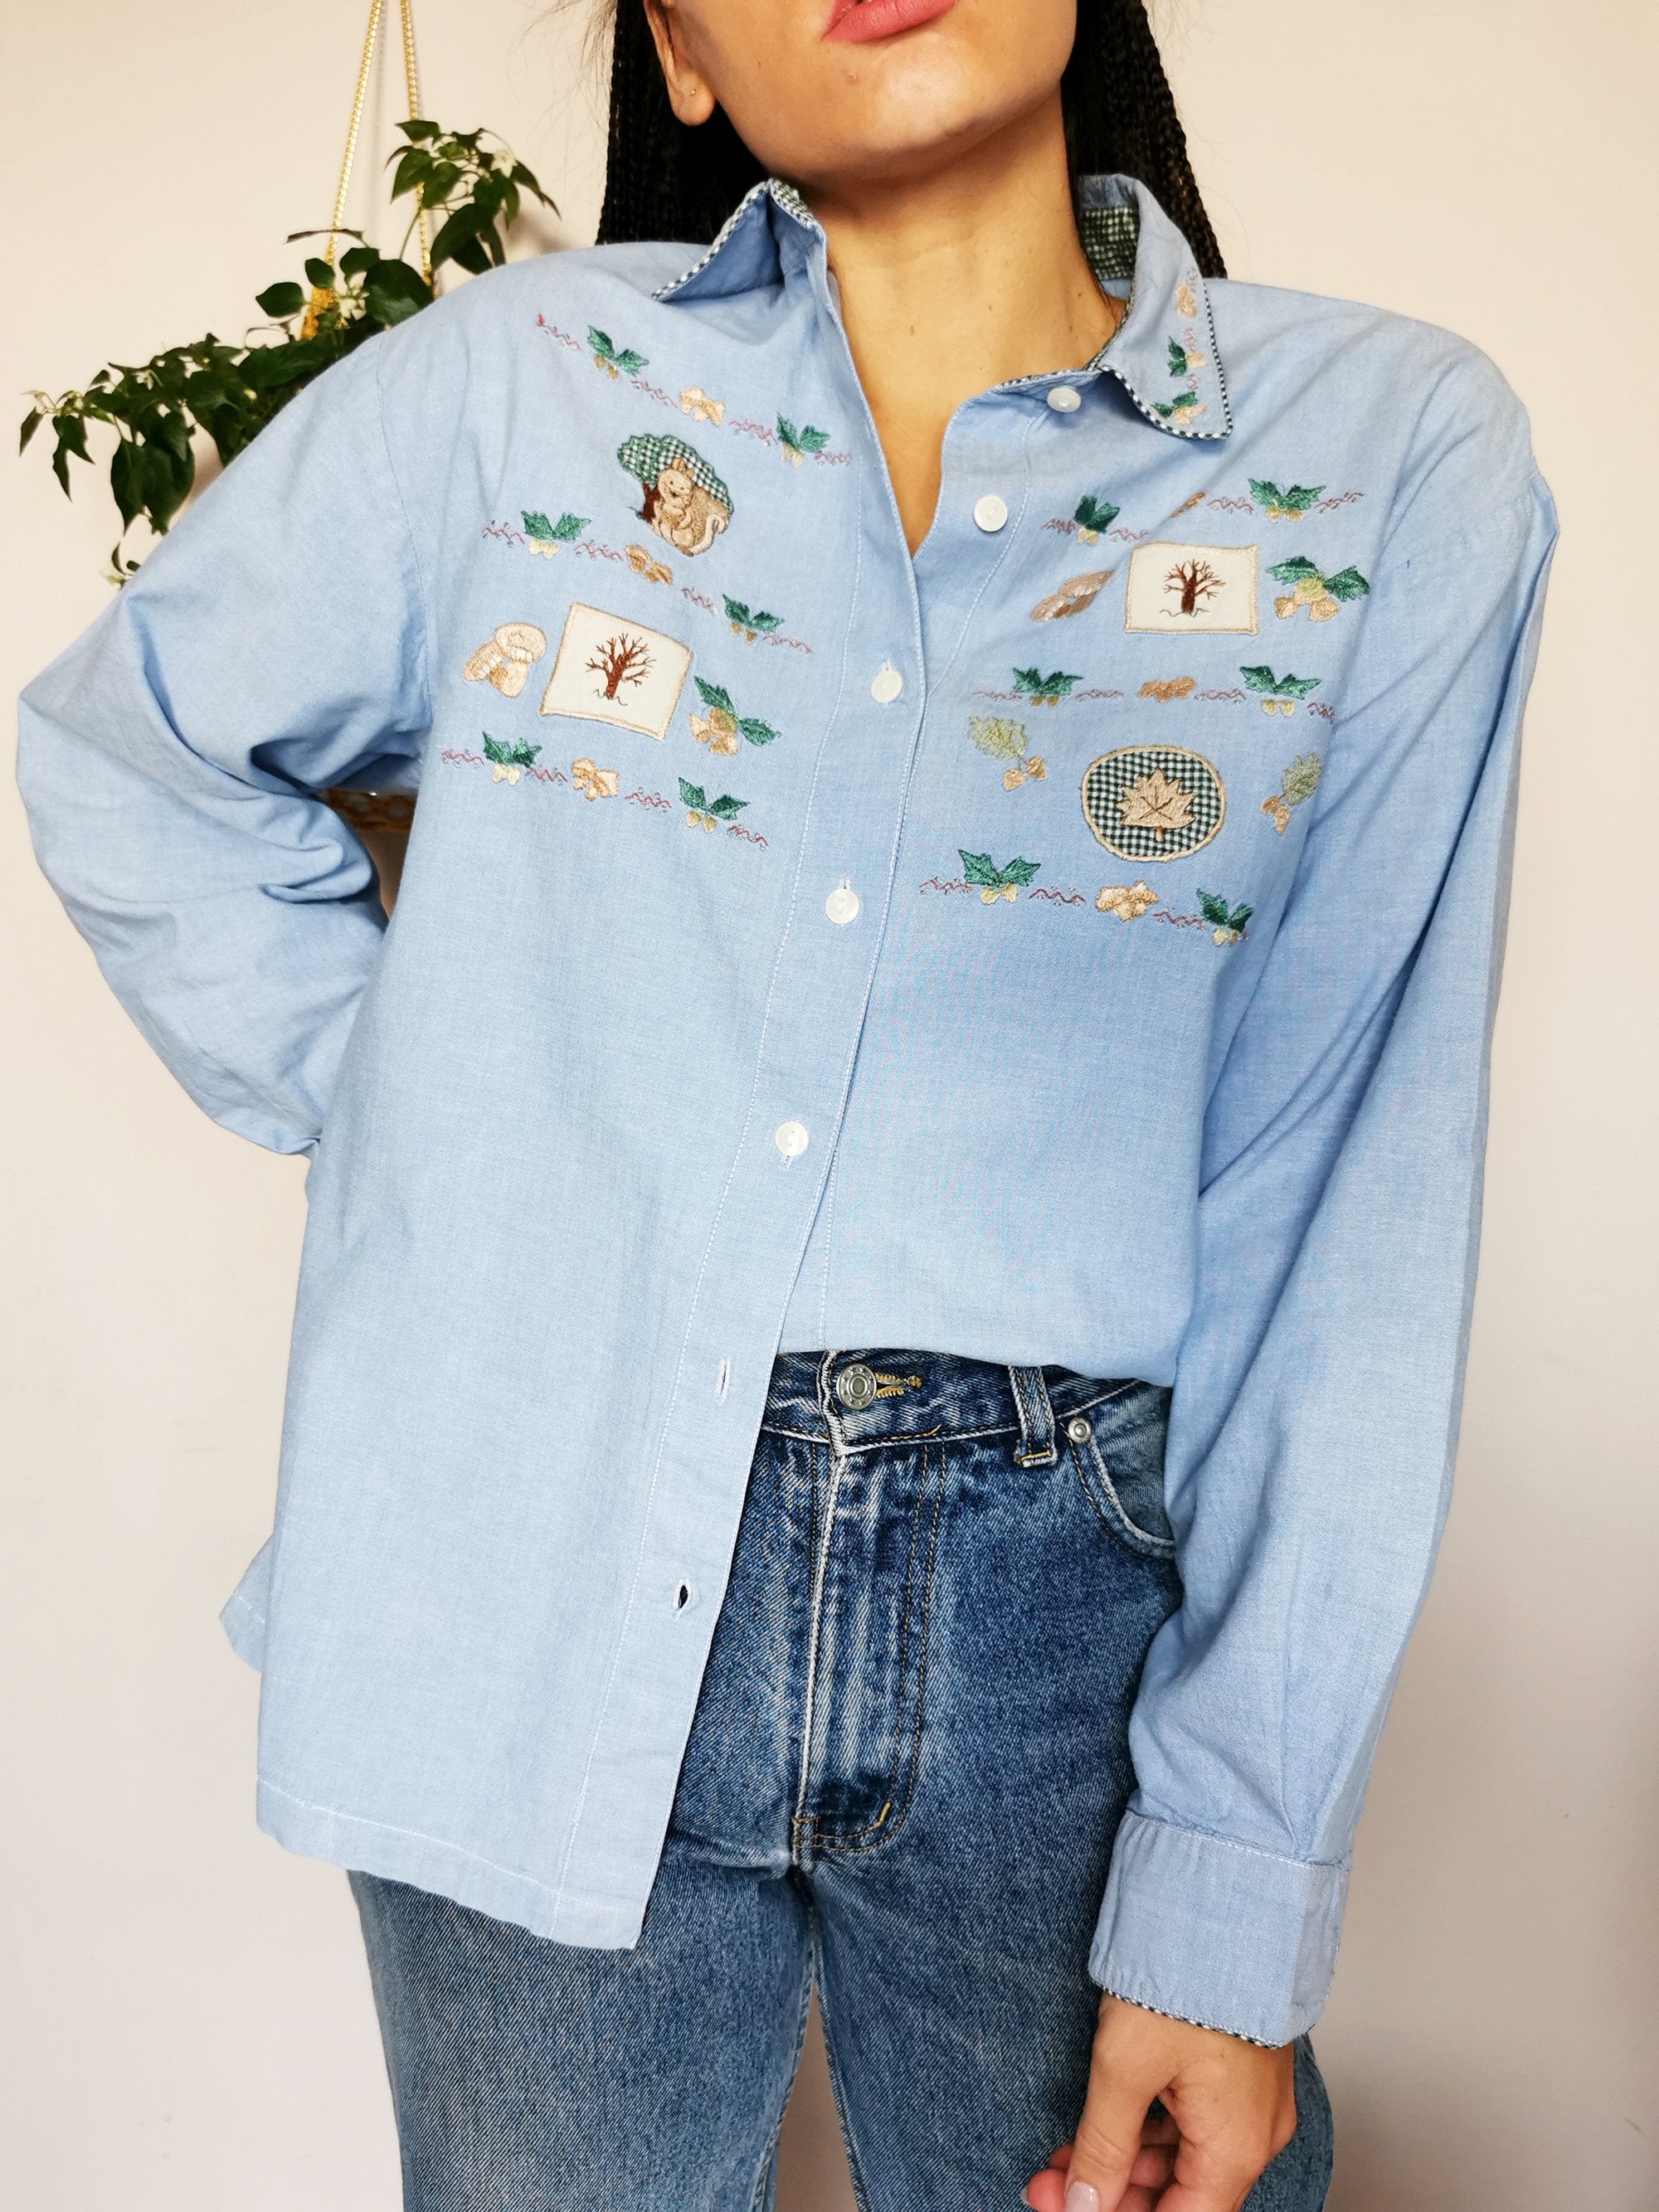 Vintage 90s Wood print applique oversized unisex shirt top